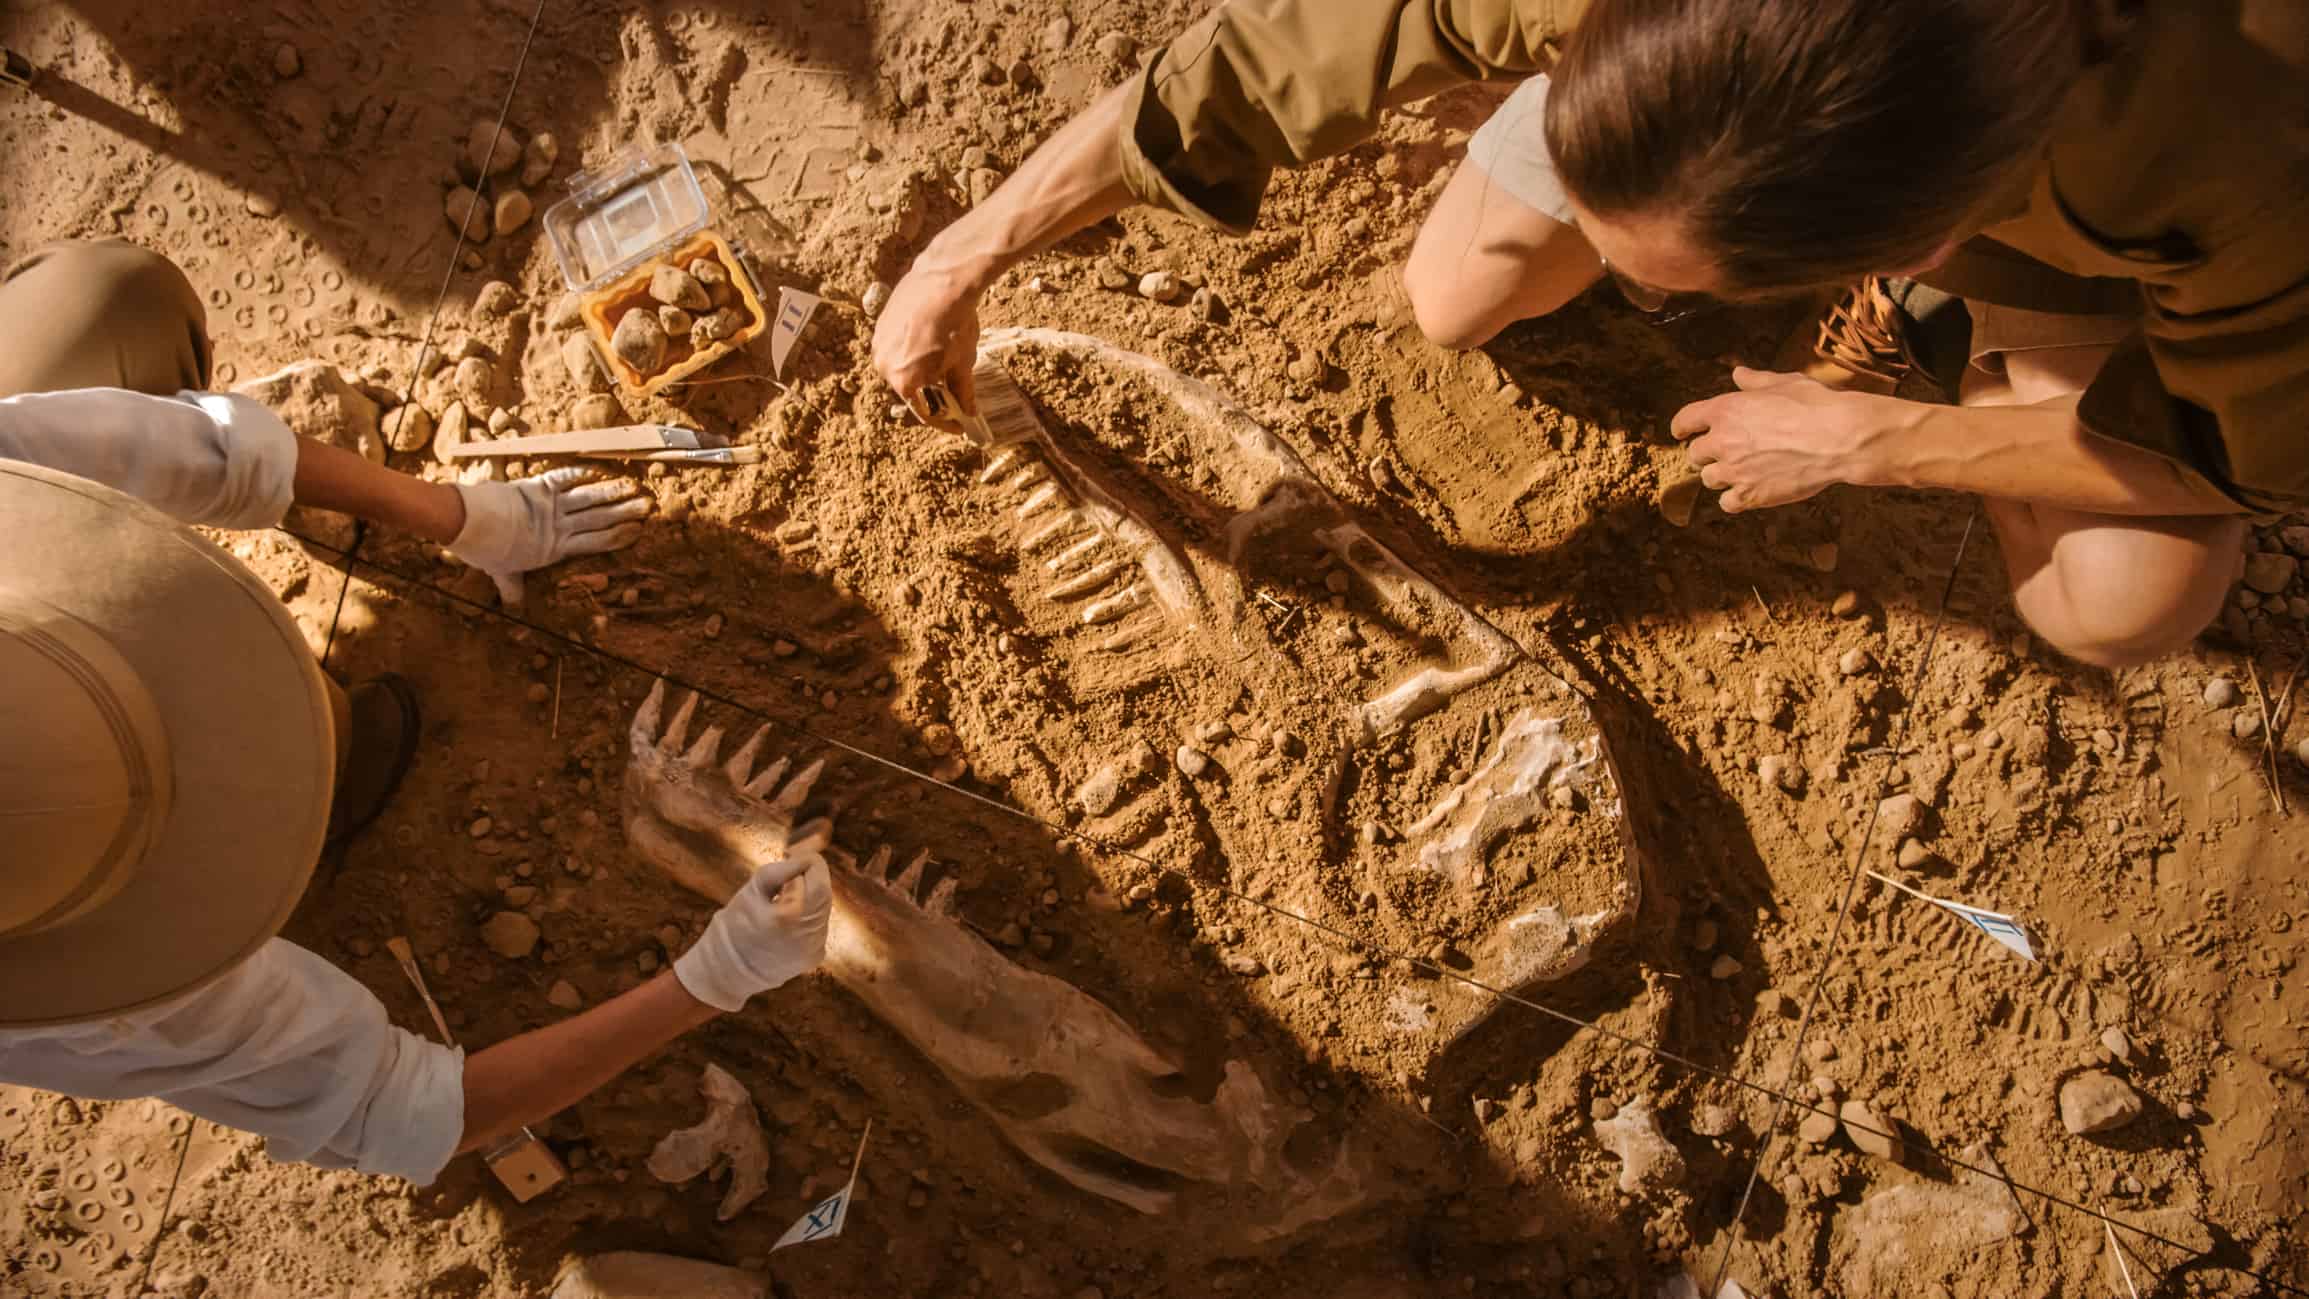 Vista dall'alto: due grandi paleontologi puliscono lo scheletro di dinosauro appena scoperto.  Gli archeologi scoprono resti fossili di nuove specie.  Sito di scavo di scavi archeologici.